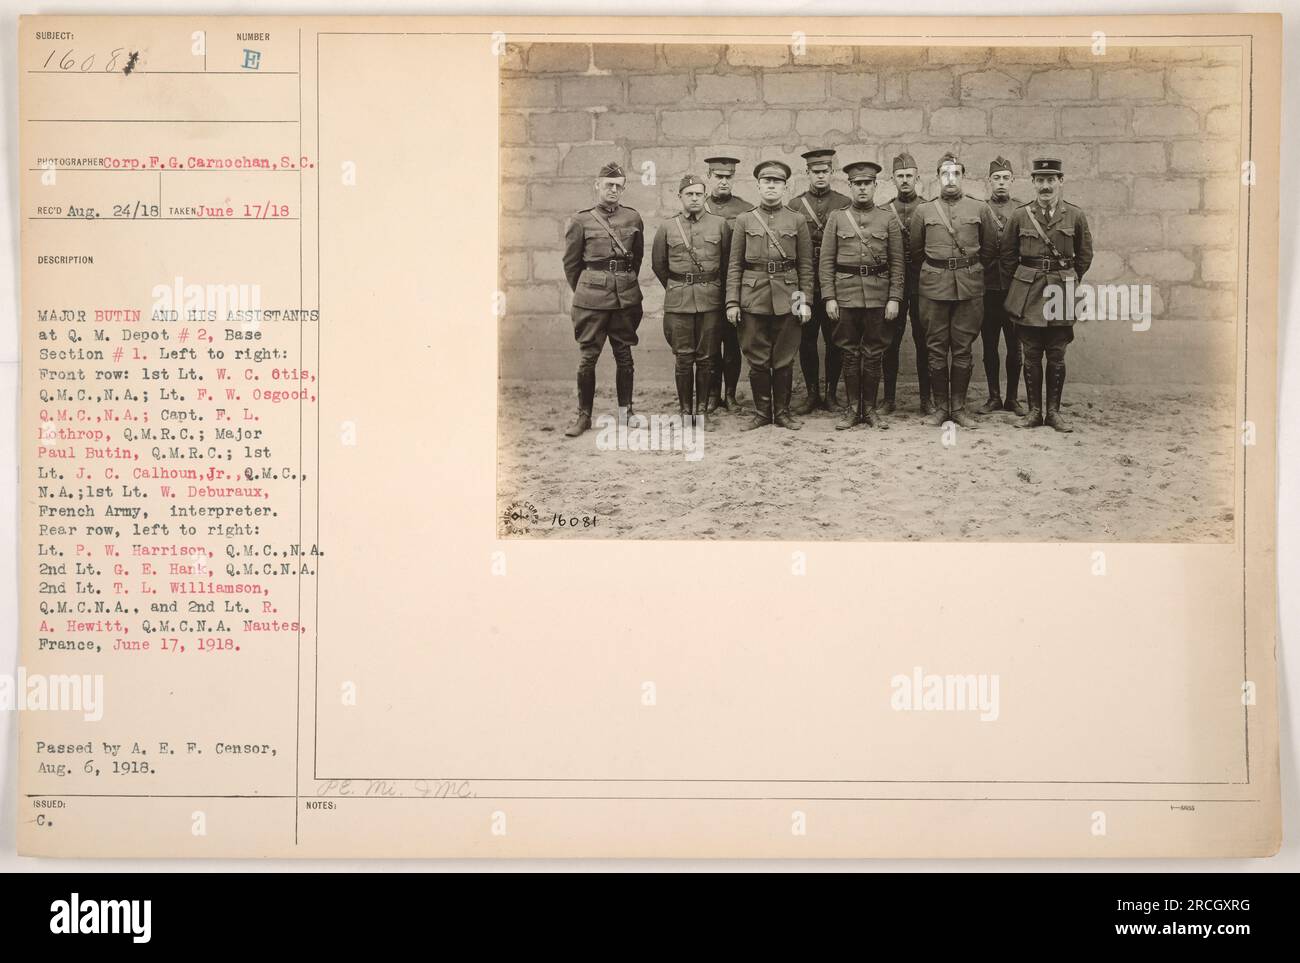 Il maggiore Butin e i suoi assistenti al Q.M. Depot #2, base Section #1 a Nautes, Francia il 17 giugno 1918. Da sinistra a destra in prima fila: 1° tenente W. C. Otis, Q.M.C.N.A.; tenente P. W. Osgood, Q.M.C., N.A.; Capt. F. L. Lothrop, Q.M. R.C.; maggiore Paul Butin, Q.M. R.C.; i tenente J. C. Calhoun, Jr., Q.M.C., N.A.; i tenente W. Deburaux, esercito francese, interprete. Nella fila posteriore, da sinistra a destra: Tenente P. W. Harrison, Q.M.C., N.A.; 2° tenente G. E. Hank, Q.M.C., N.A.; 2° tenente T. L. Williamson, Q.M.C., N.A.; e 2° tenente R. A. Hewitt, Q.M.C., N.A. Foto Stock